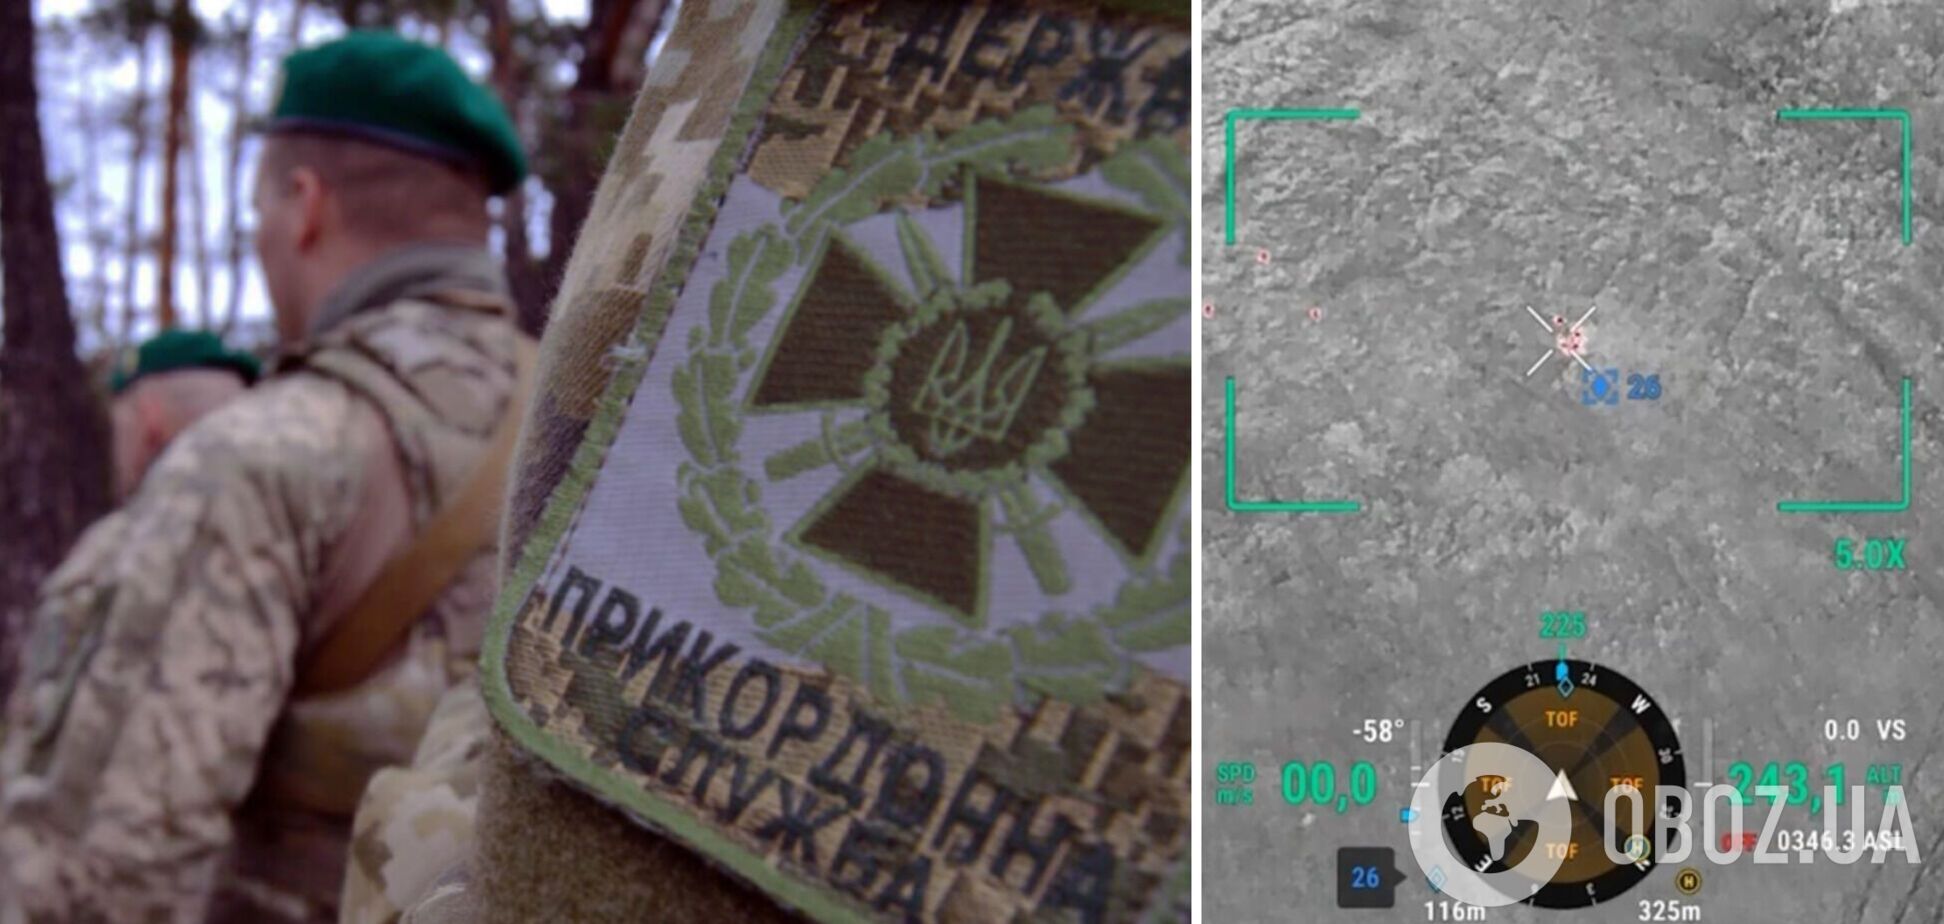 'Прогулка' не удалась: пограничники задержали 14 нарушителей границы на Одесщине. Видео